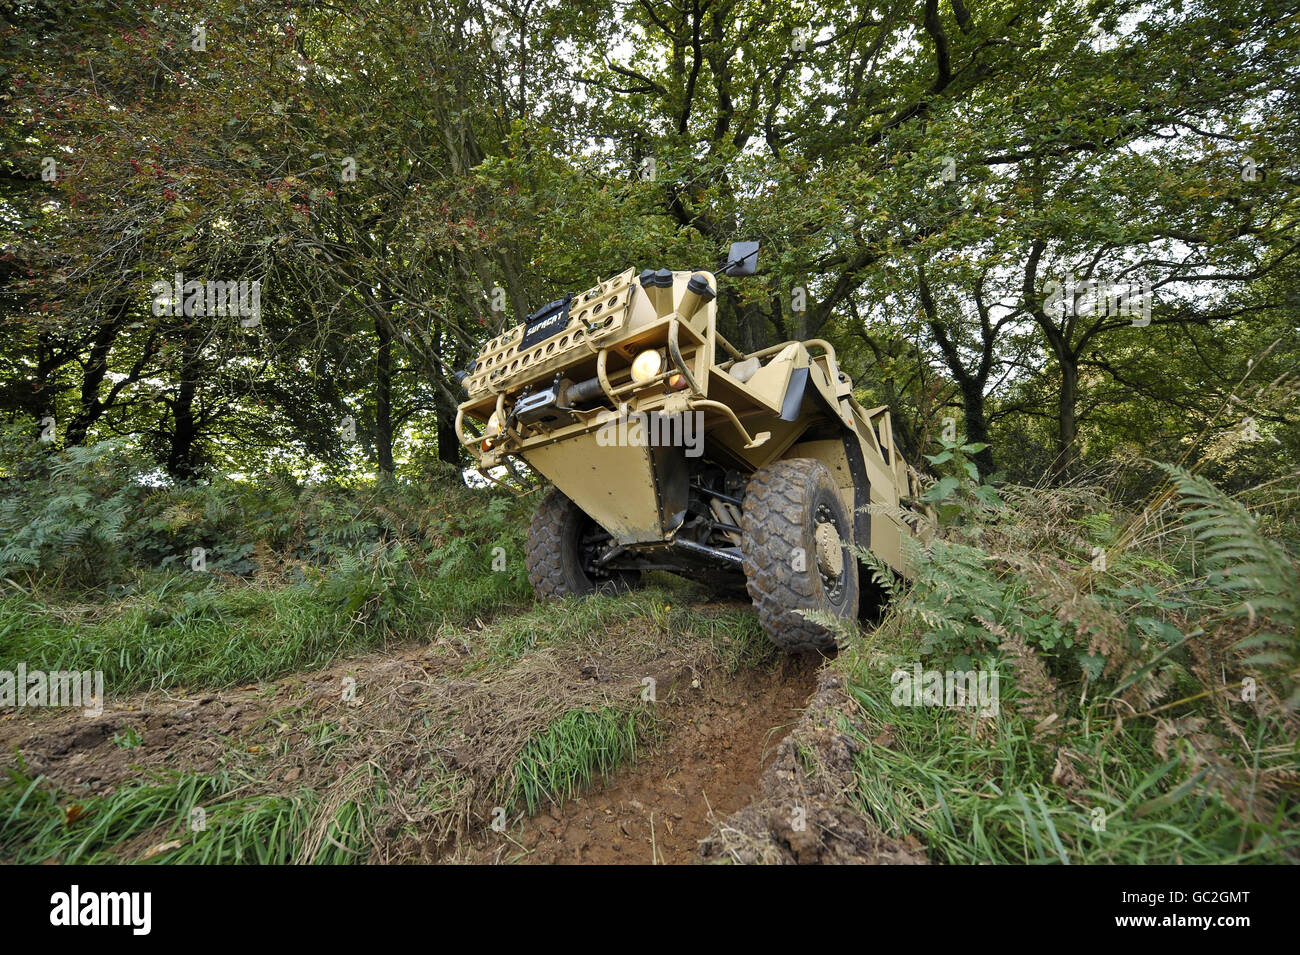 Un véhicule à haute mobilité Supacat nommé « Jackal » par les forces militaires britanniques est photographié lors d'un essai pour les médias dans une zone boisée près de Dunkerswell, Honiton, Devon, où les véhicules sont fabriqués. Banque D'Images